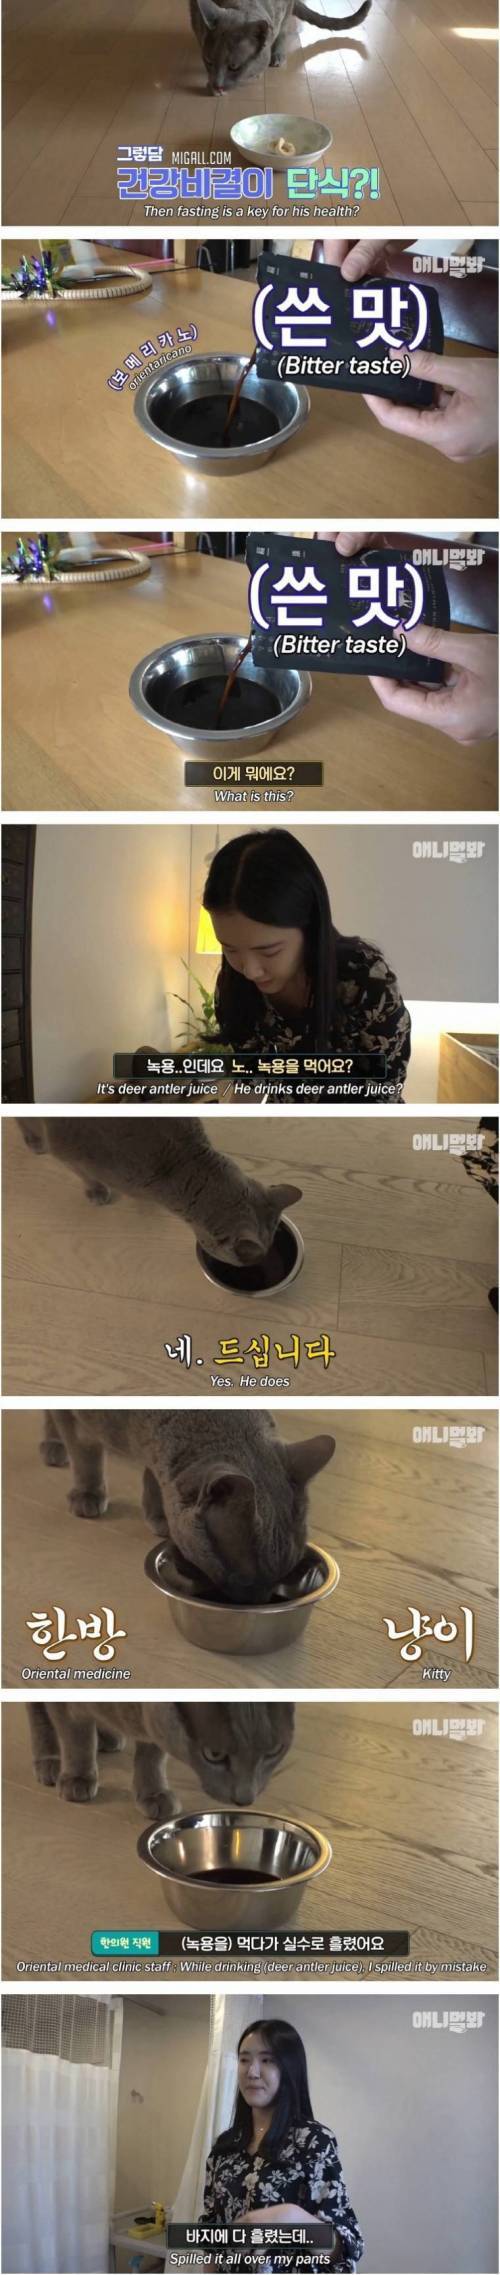 [스압] 츄르 대신 녹용 챙겨먹는 고양이